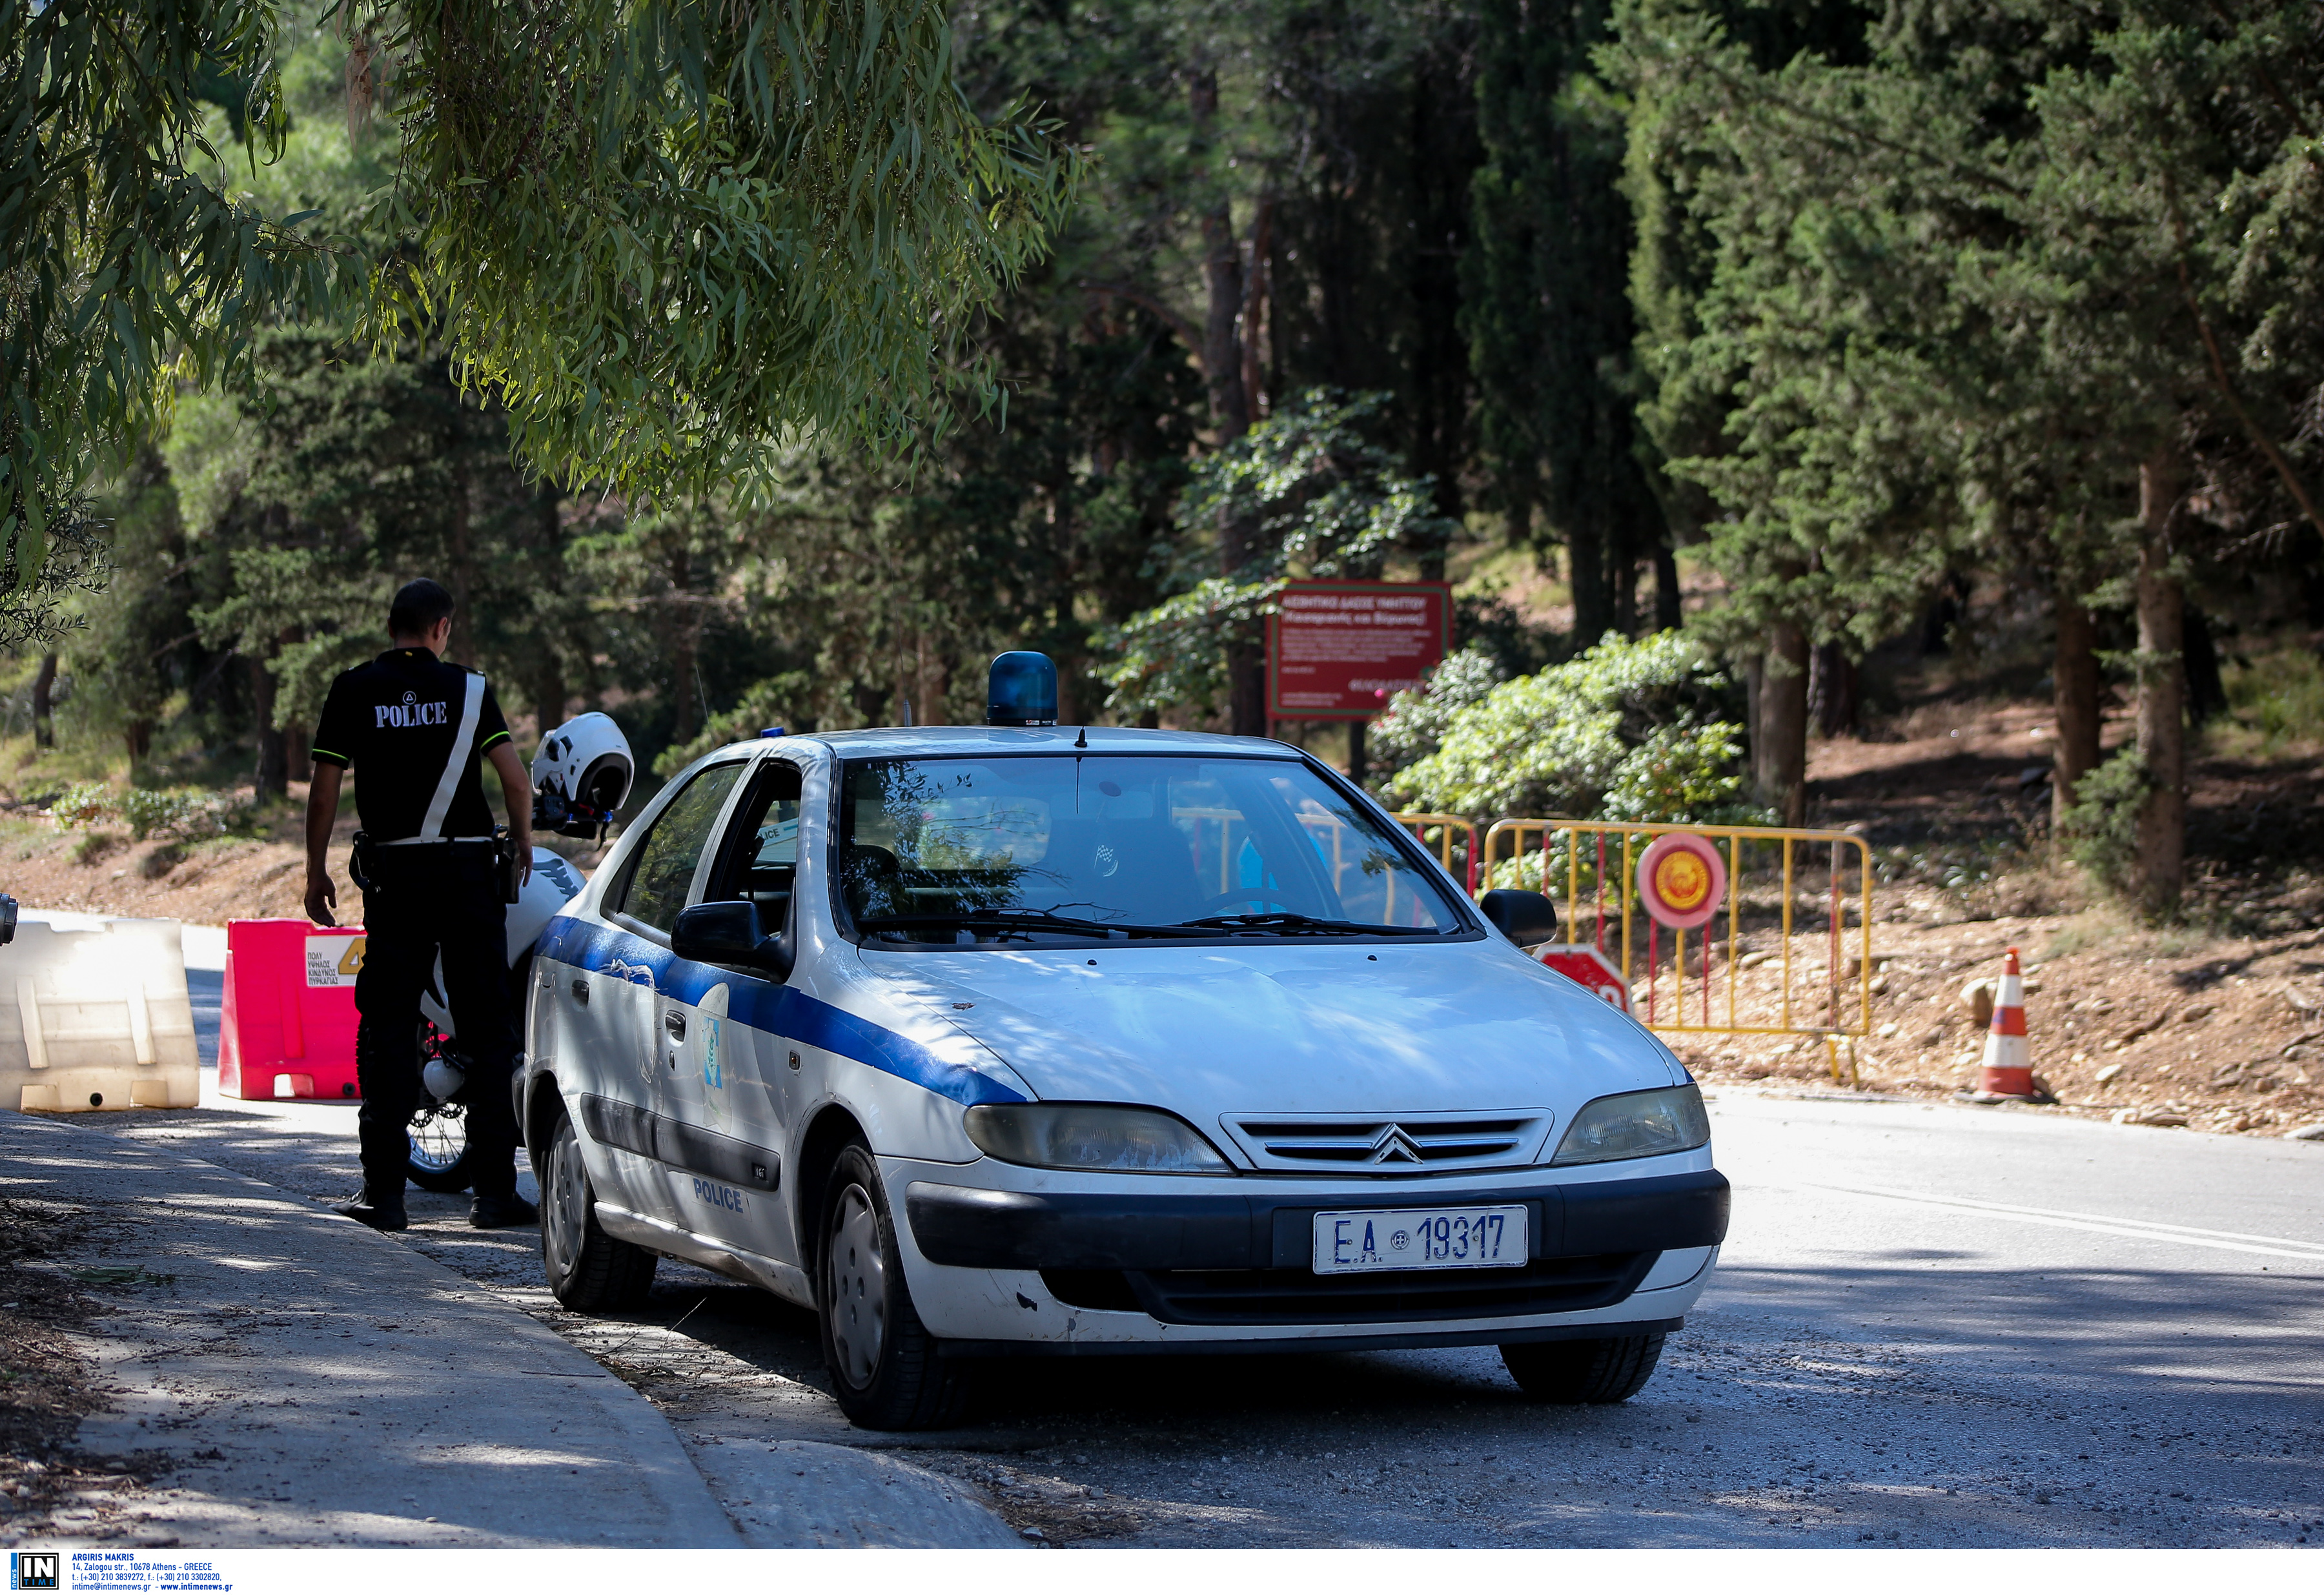 Βόλος: Θρίλερ με απανθρακωμένο πτώμα σε αυτοκίνητο – Αποκλεισμένη η περιοχή από αστυνομικούς!